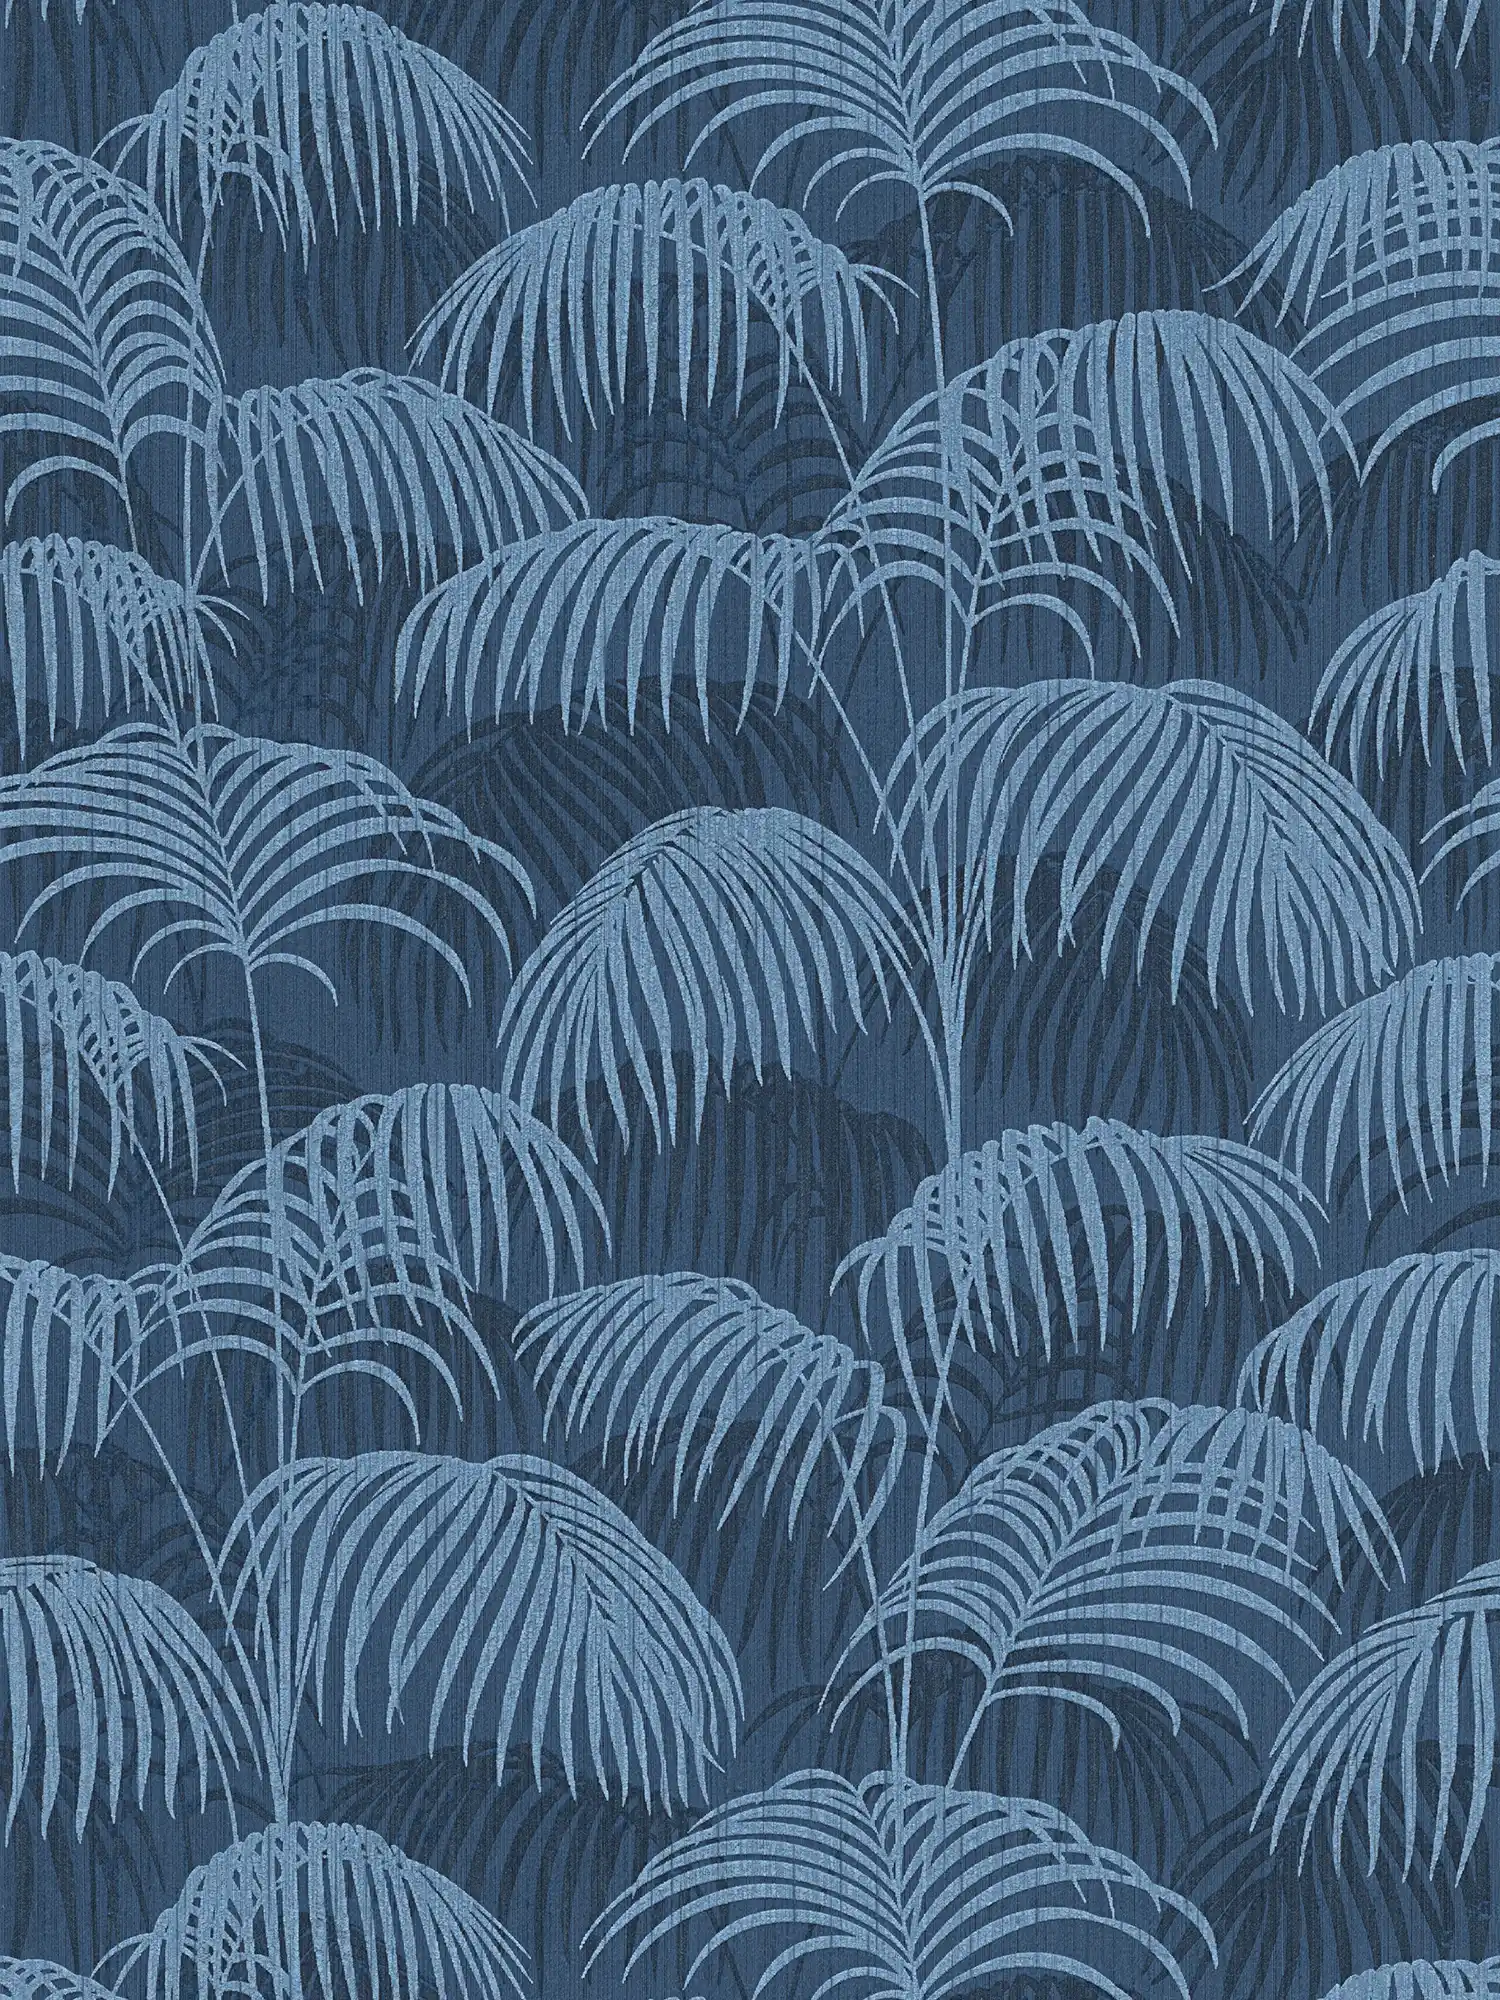 behang jungle bladeren patroon koloniale stijl - blauw
